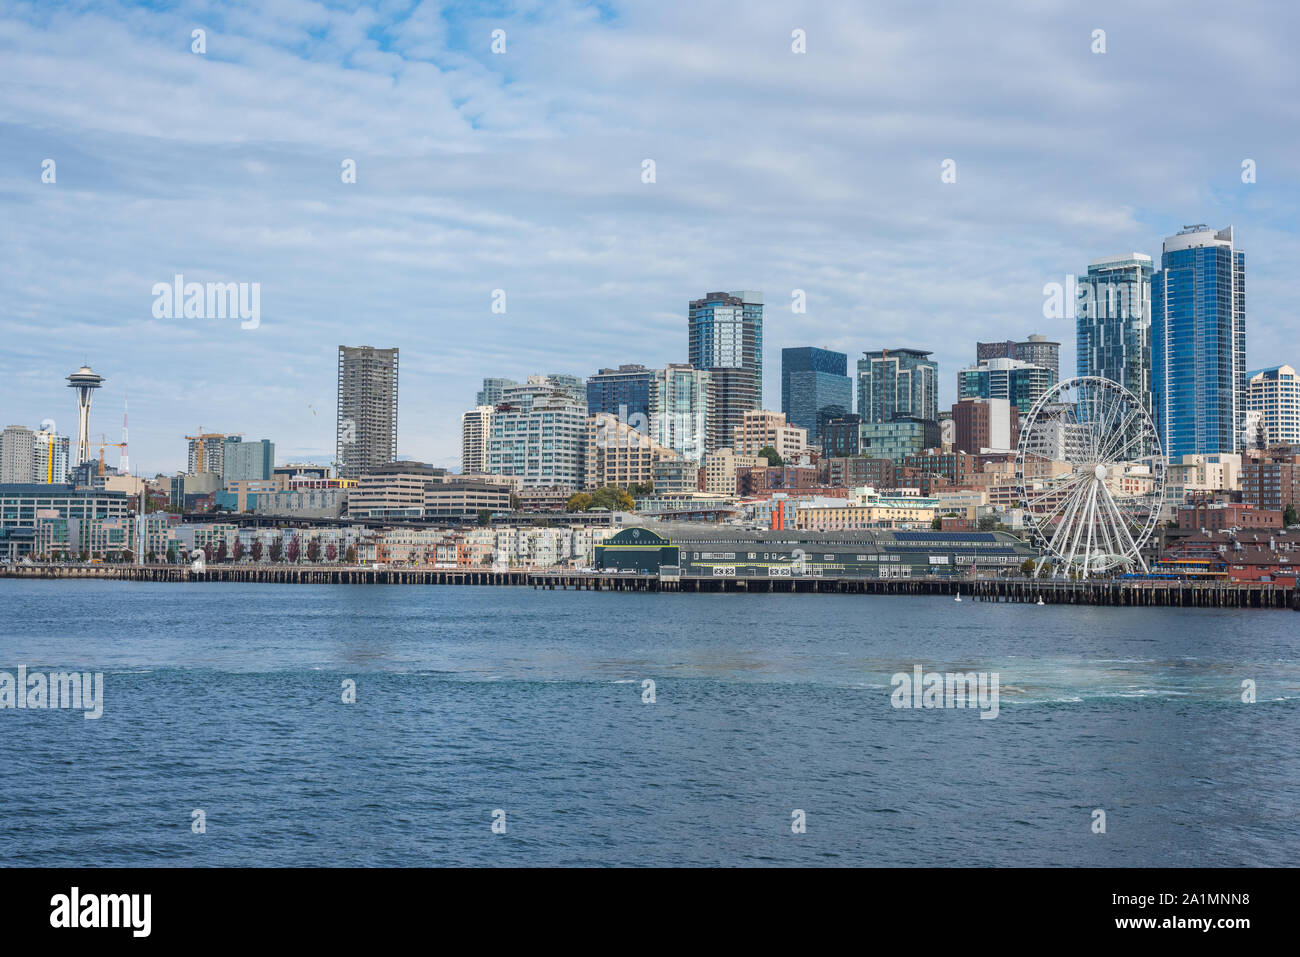 RJ Stile Landschaftsfotografie Seattle Washington Foto Space Needle Waterfront Riesenrad Gebäude Wolkenkratzer das Stadtbild Bilder Stockfoto